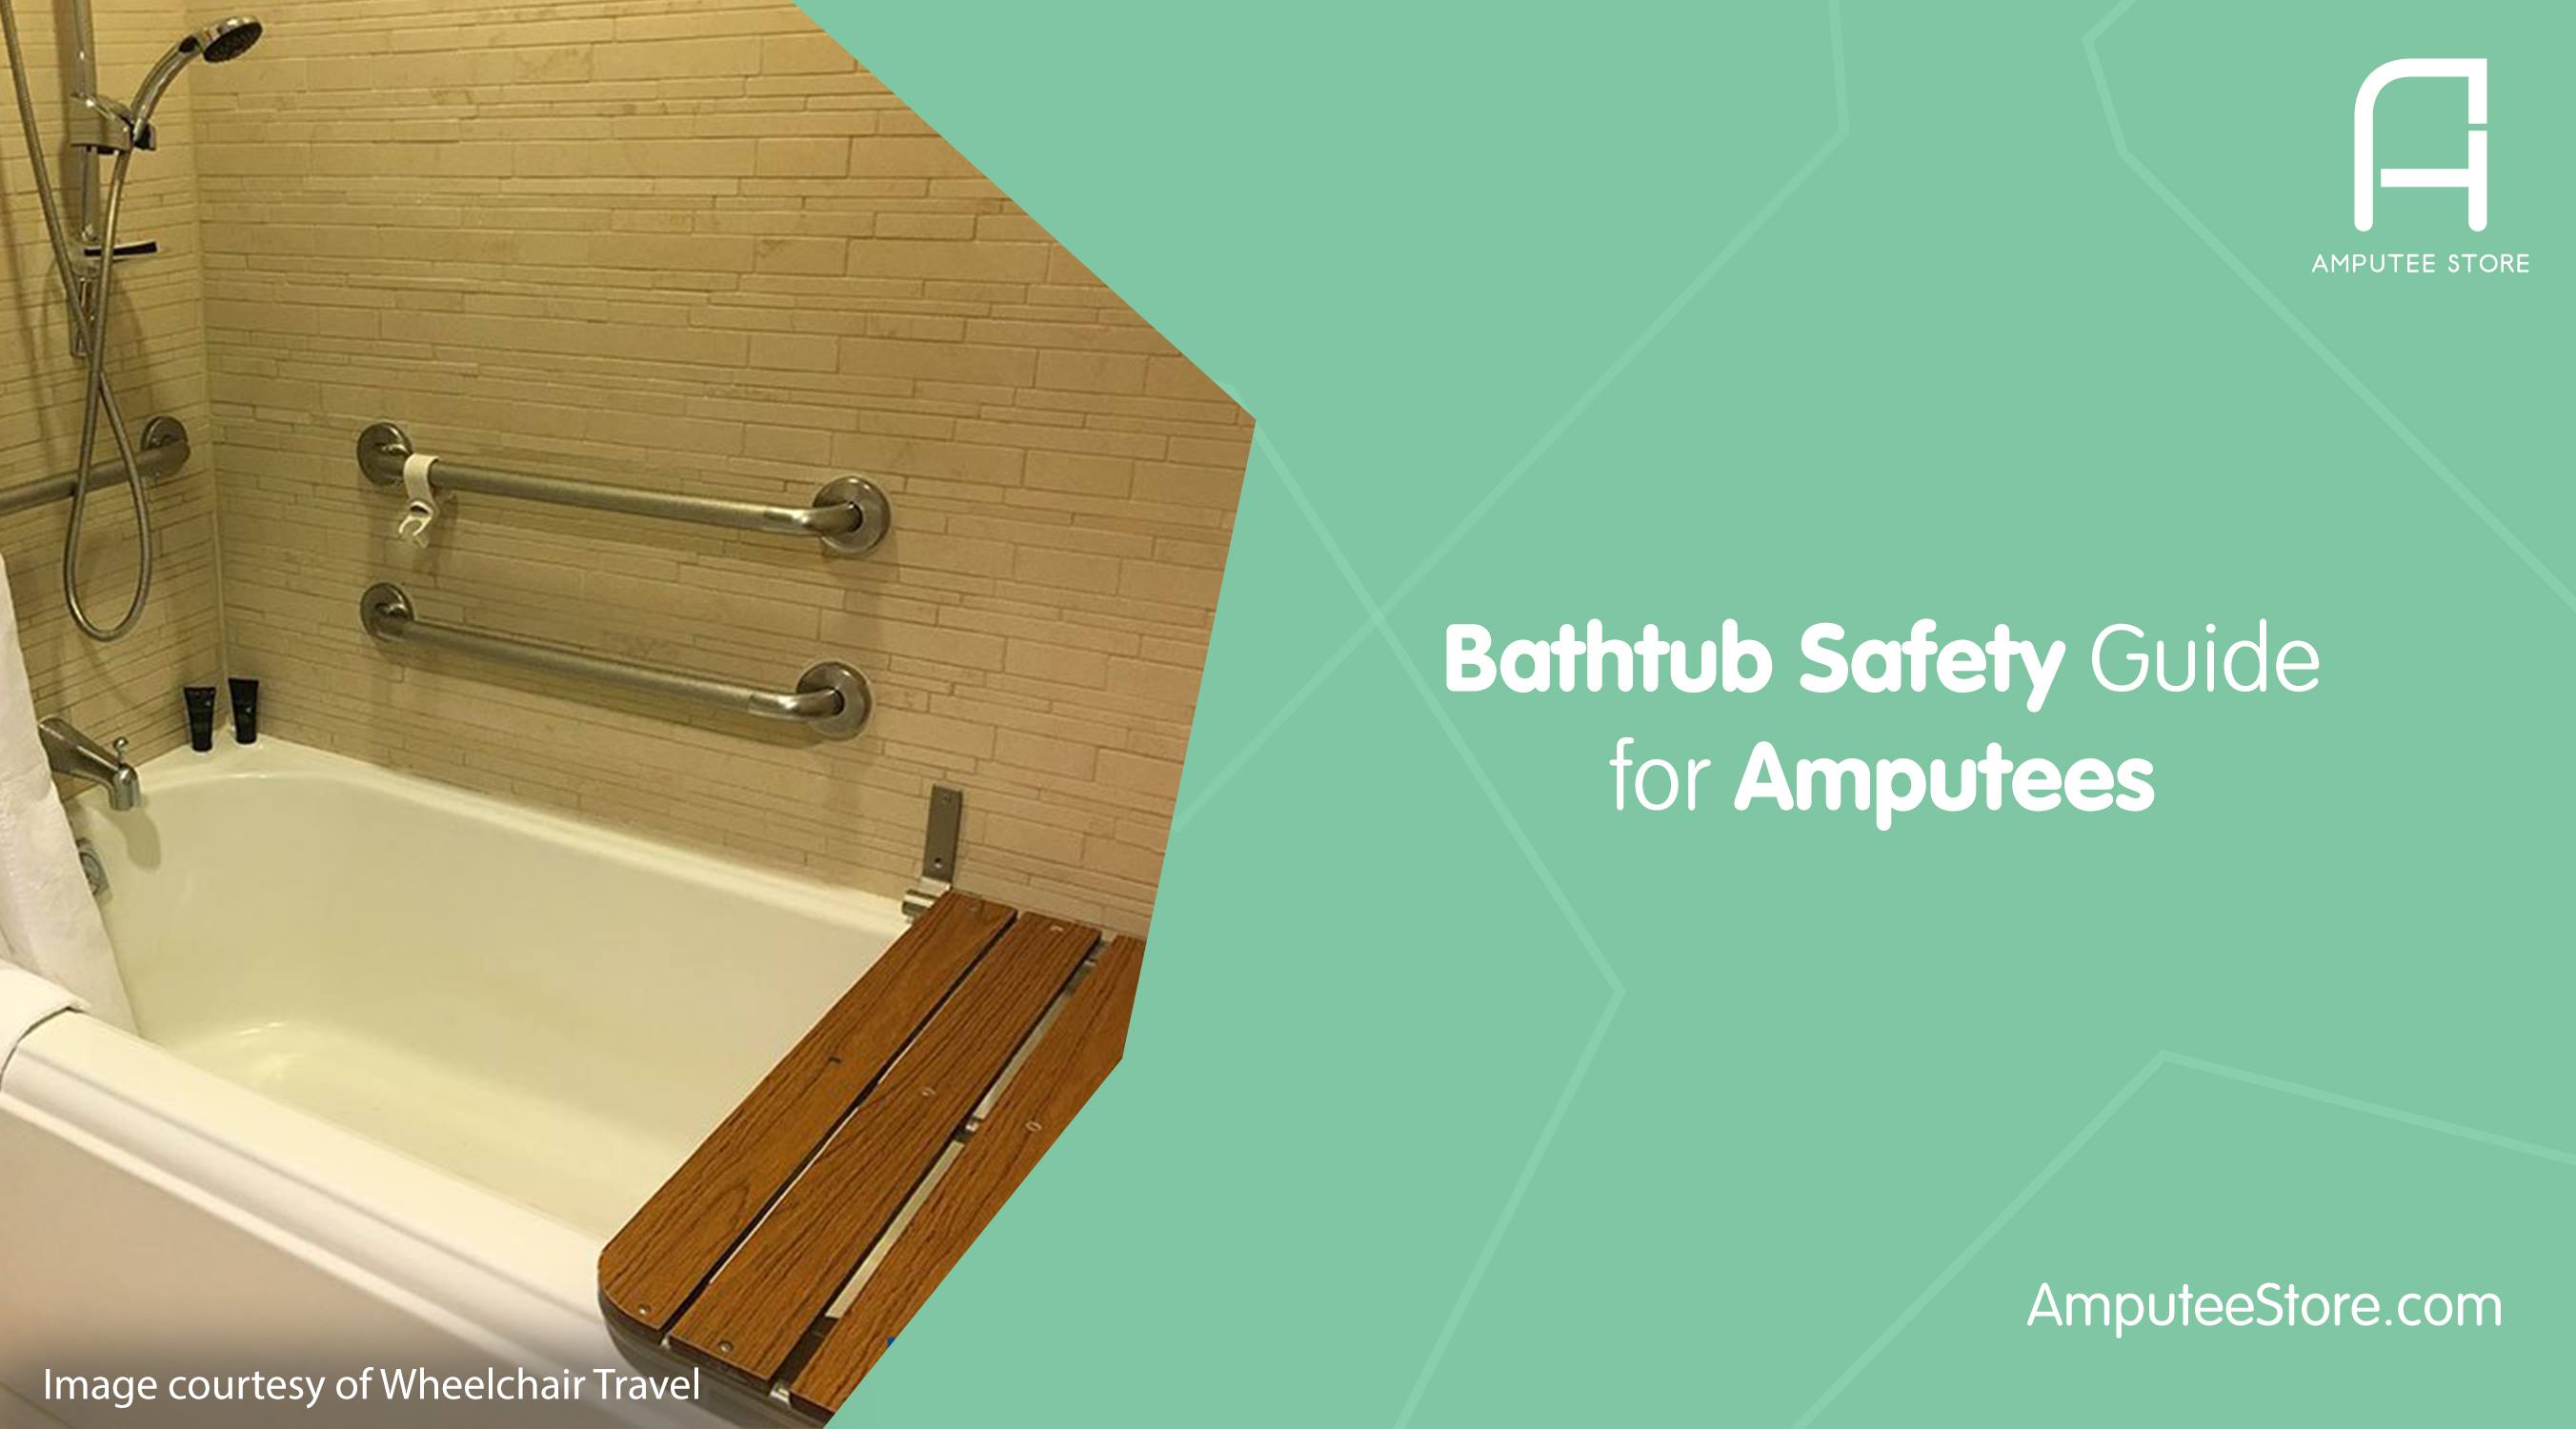 Bathtub Liners, Blog